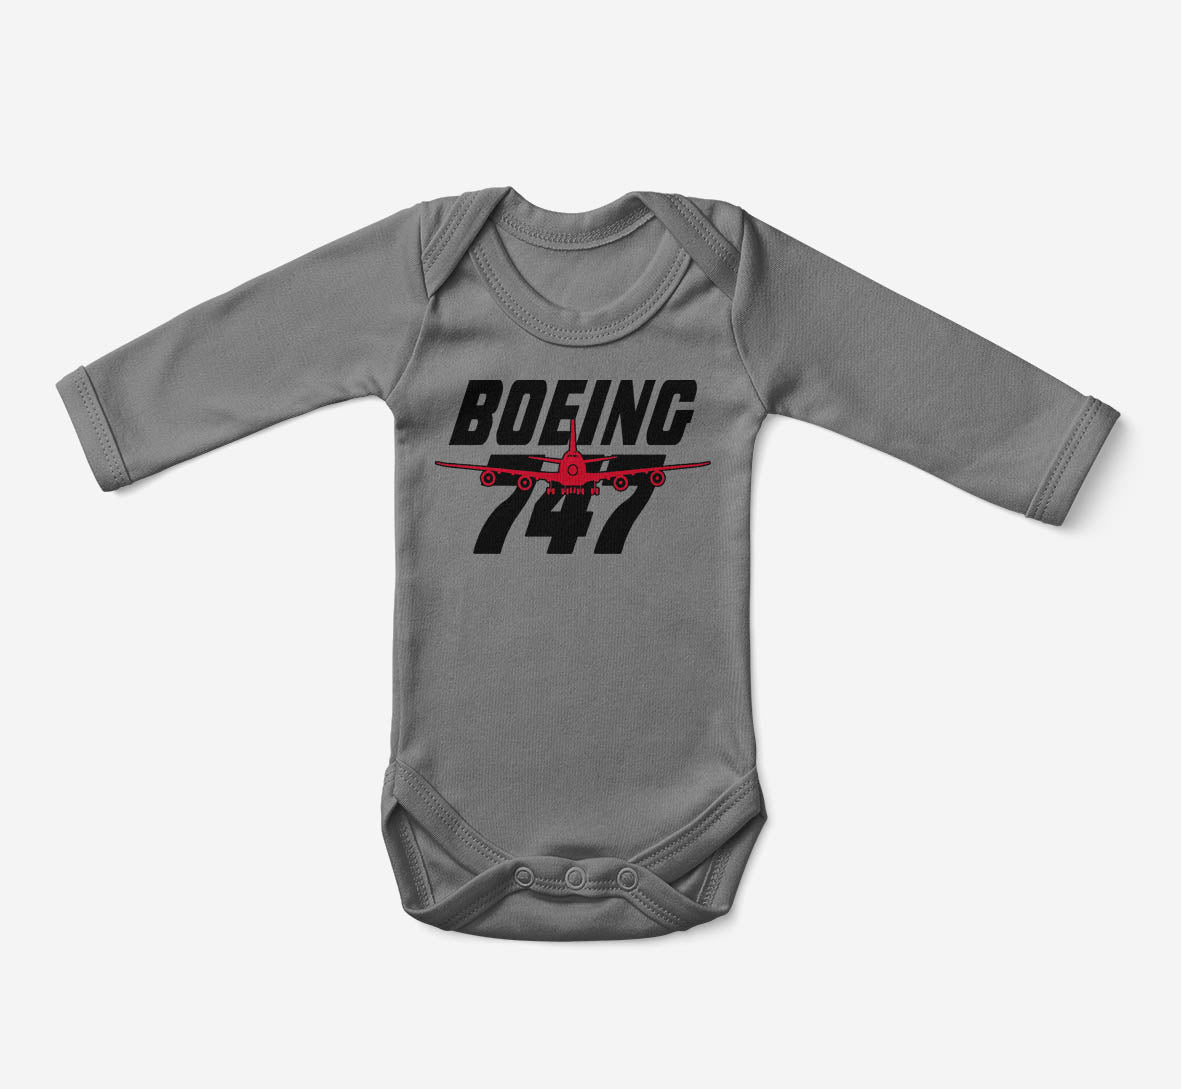 Amazing Boeing 747 Designed Baby Bodysuits